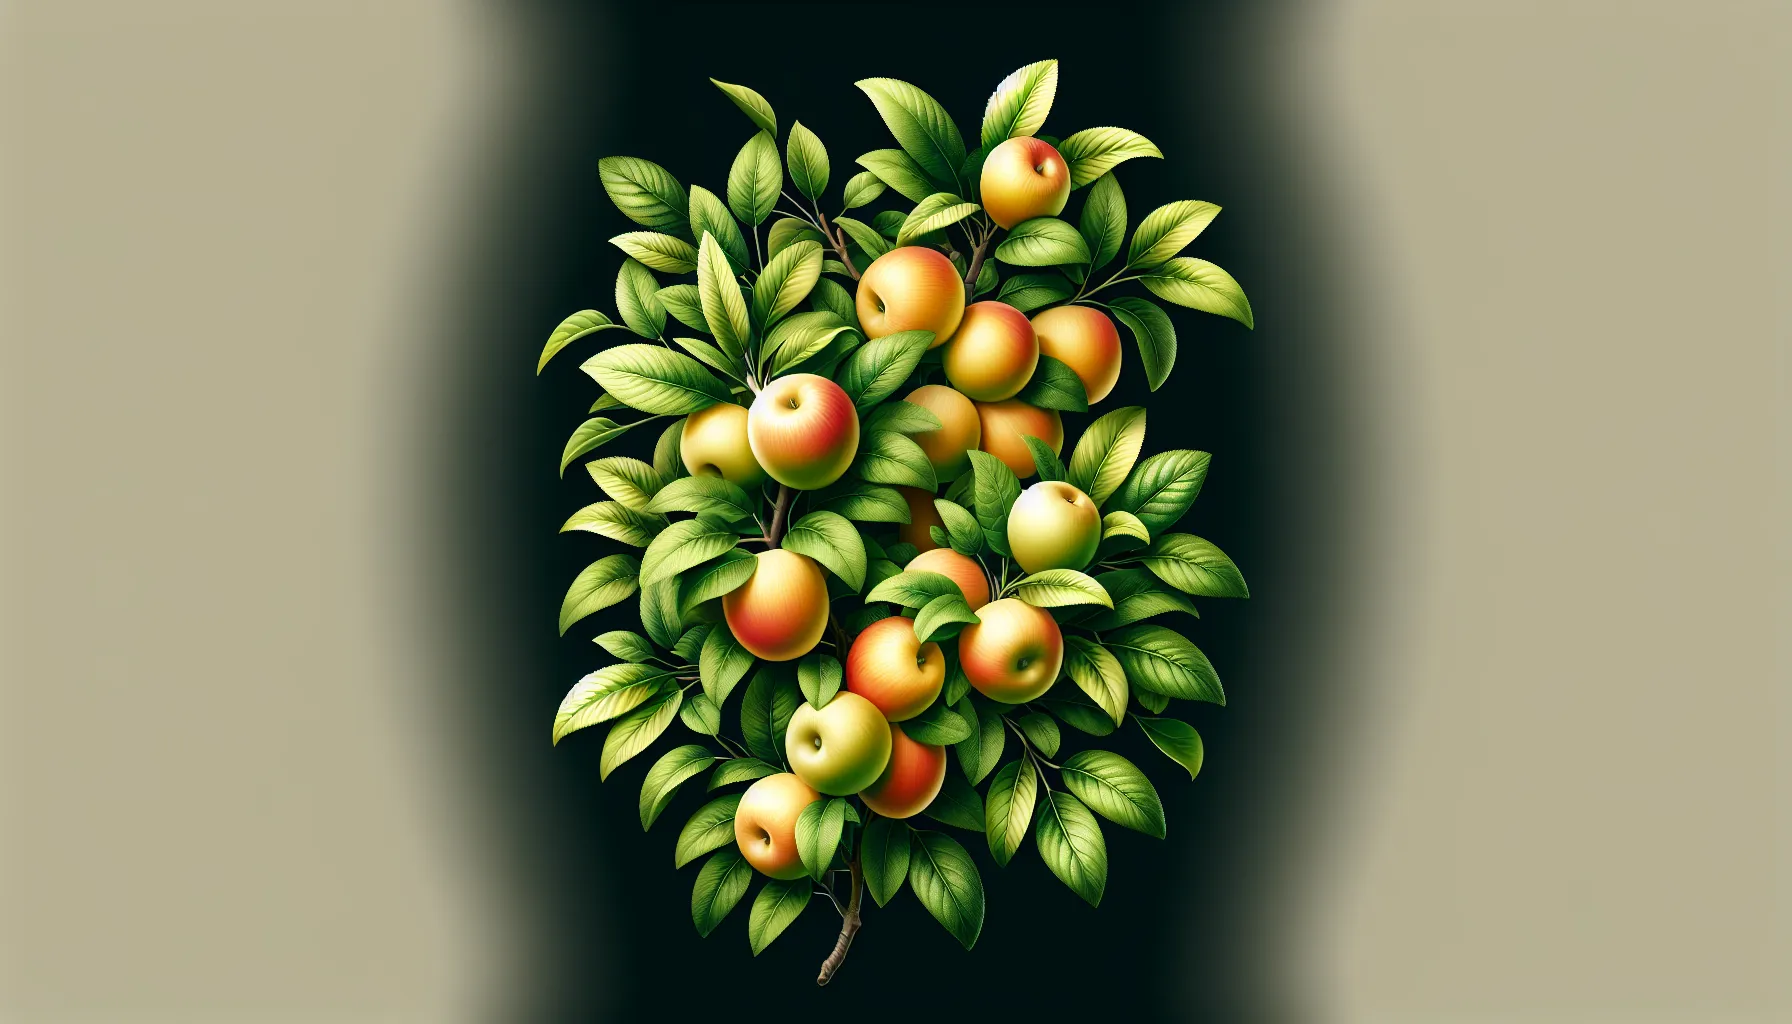 Imagen de una rama llena de frutos y hojas verdes, simbolizando el crecimiento y la fertilidad espiritual en la vida cristiana según la Biblia.